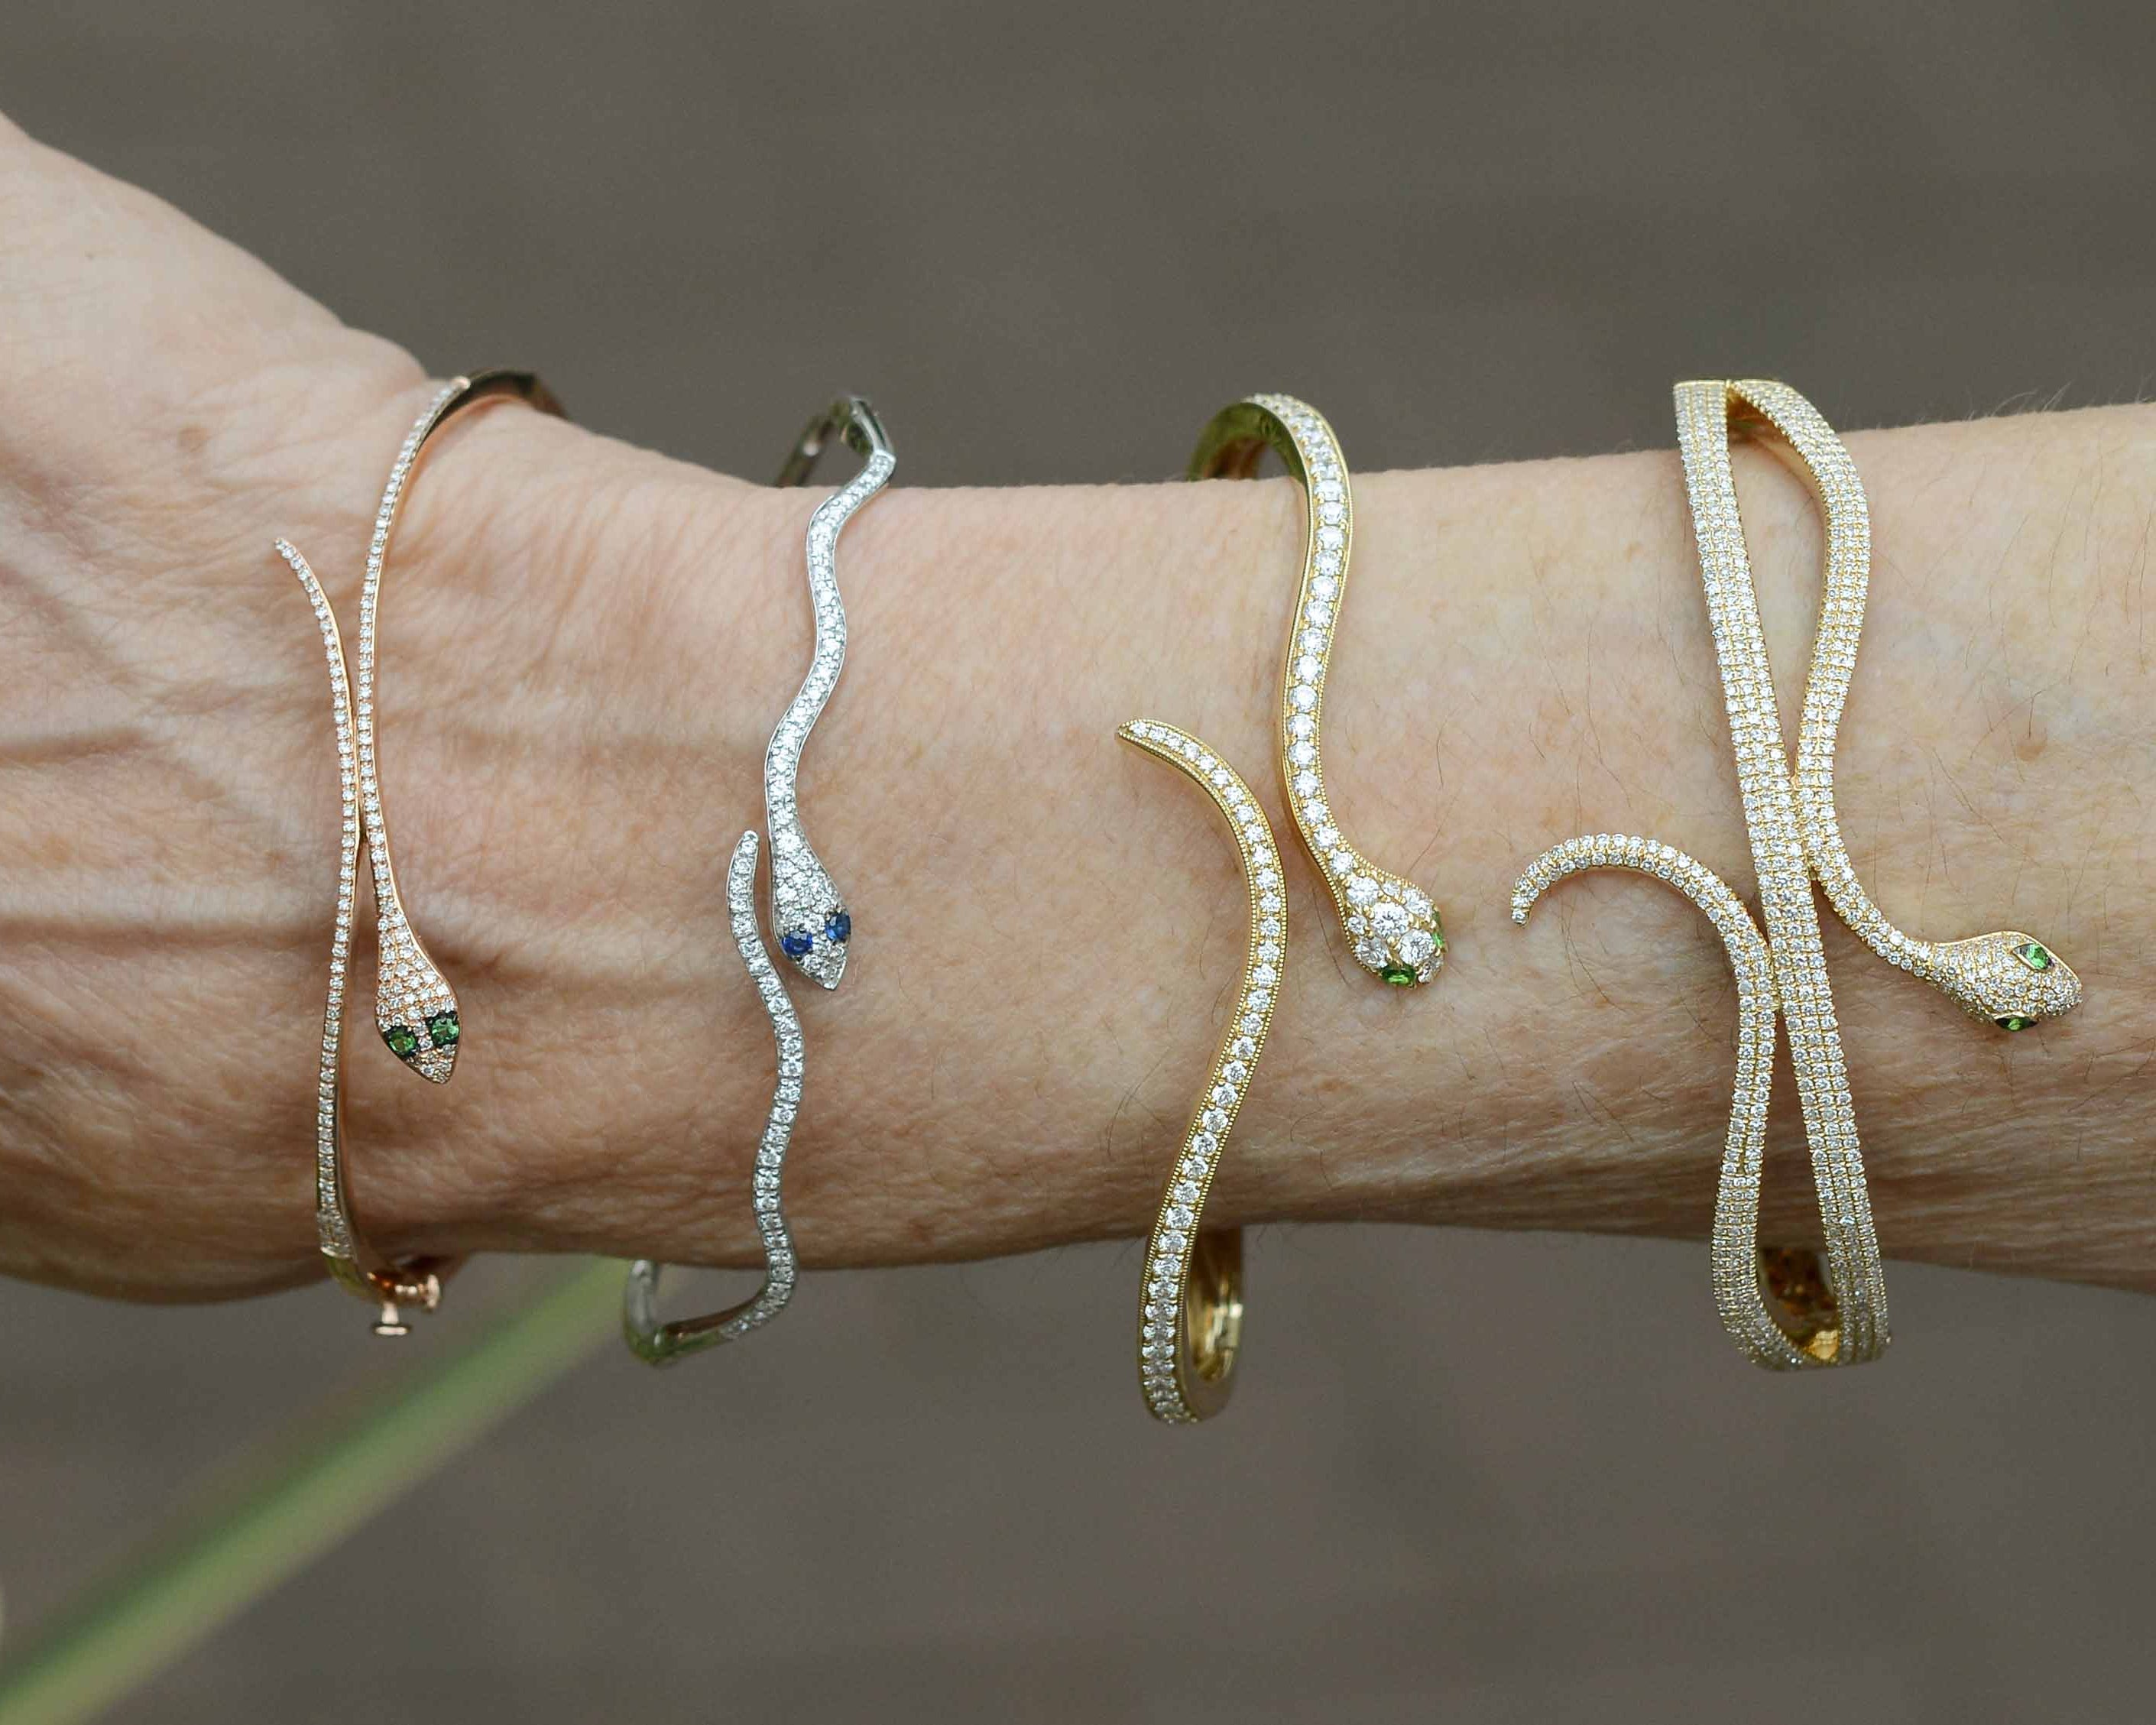 Four diamond and gold modern snake bangle bracelets.